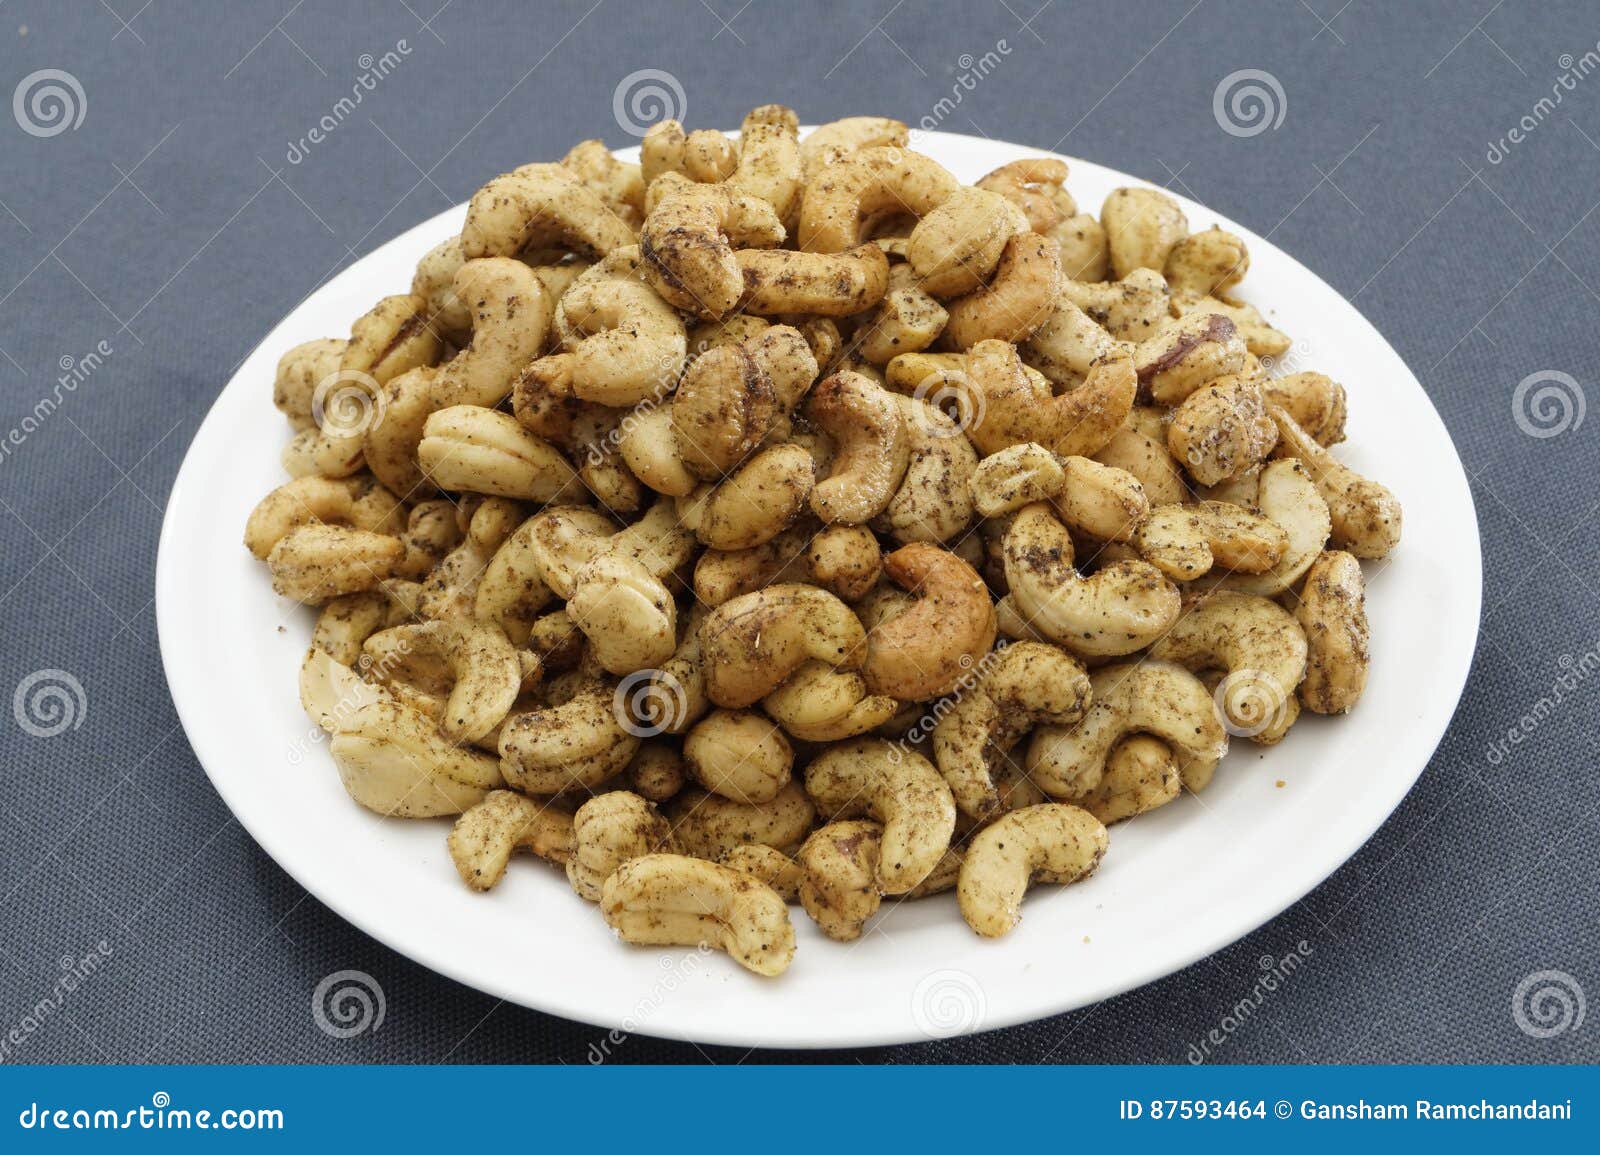 fried pepper cashews